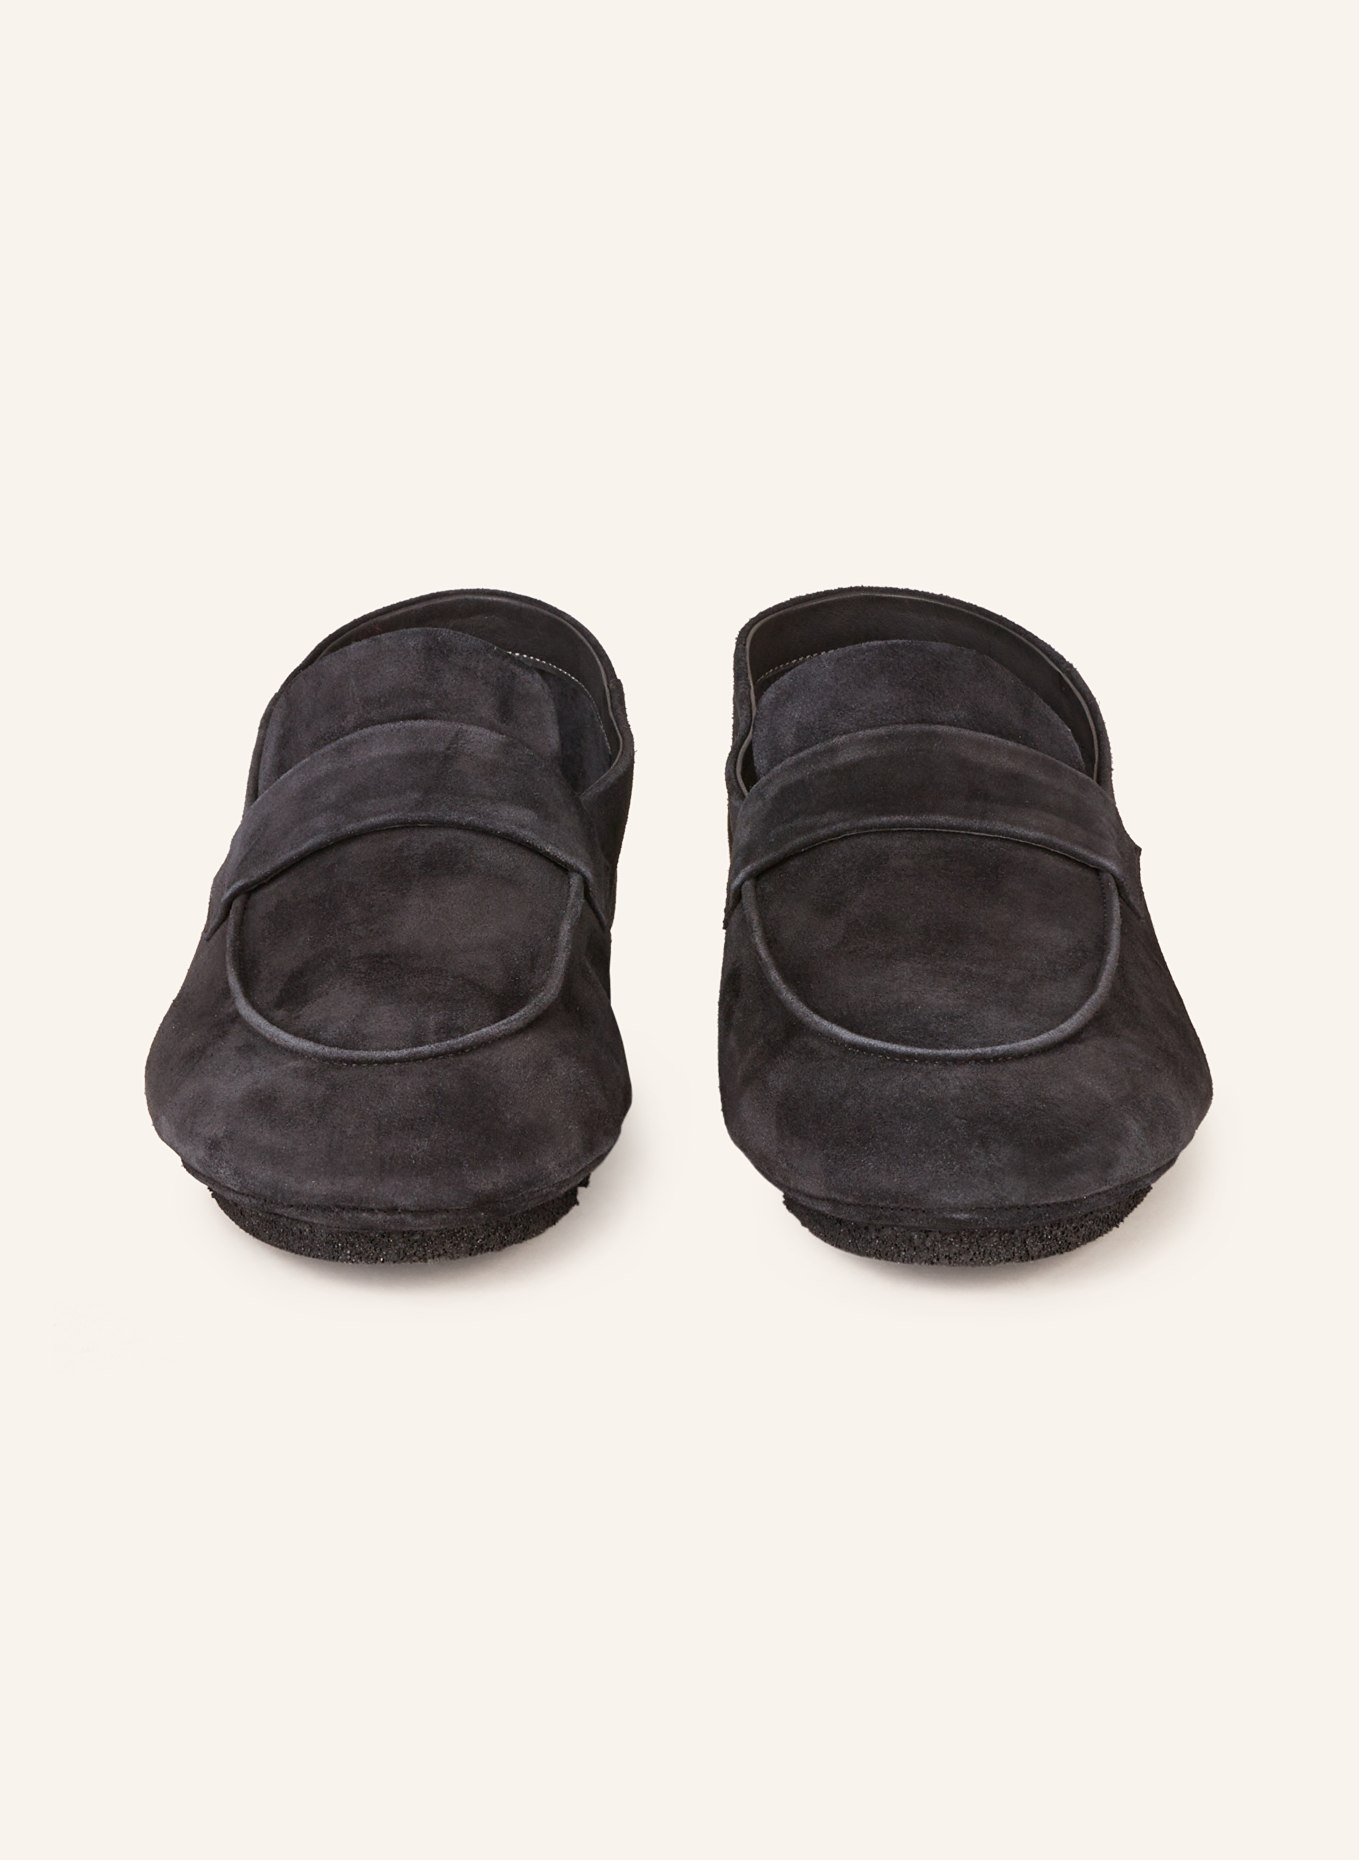 OFFICINE CREATIVE Loafers C-SIDE/001, Color: BLACK (Image 3)